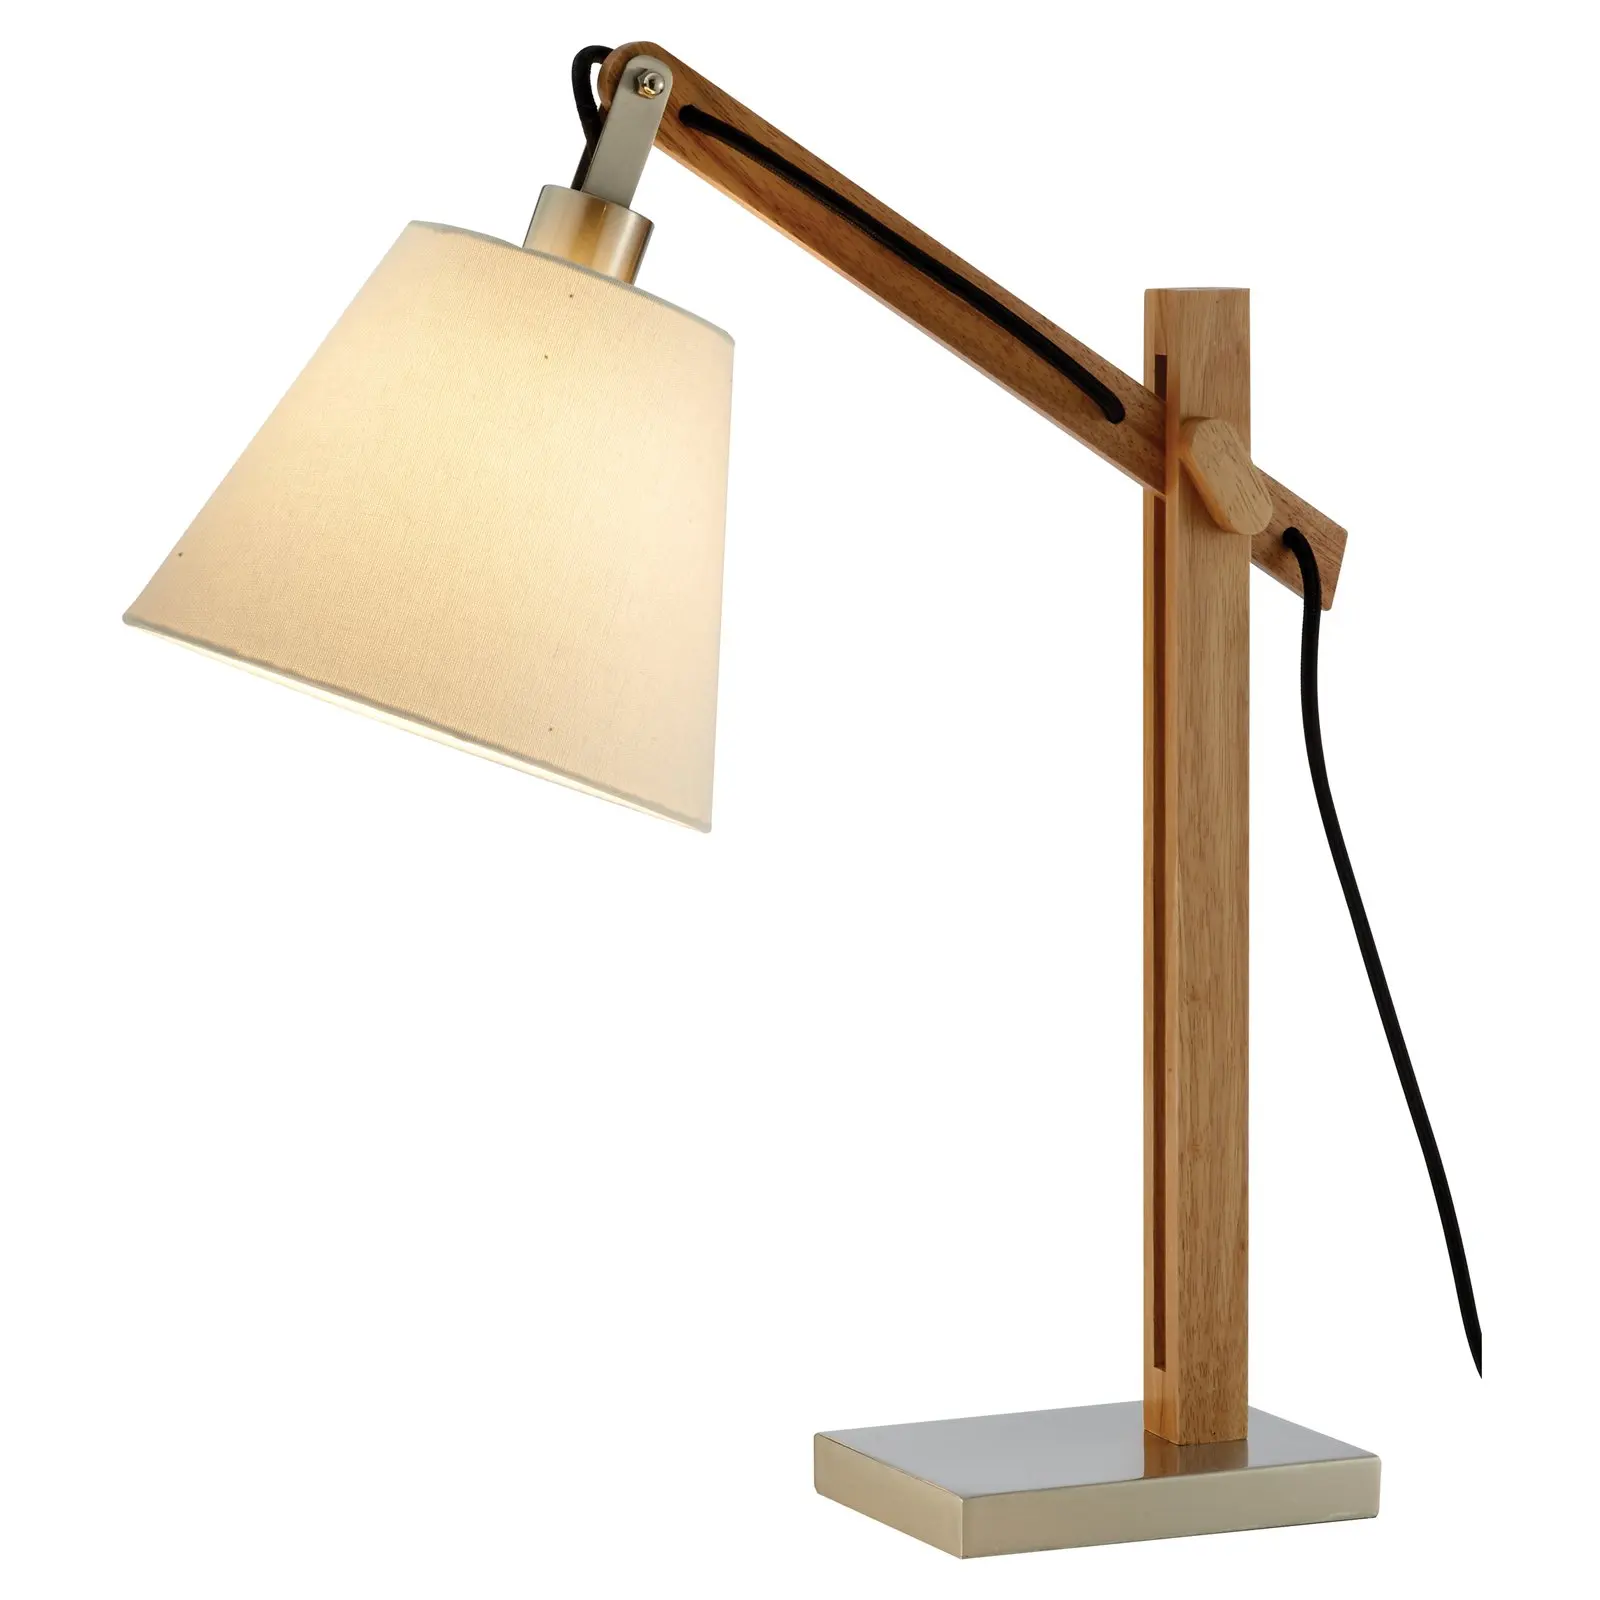 

Настольная лампа HMTX Walden из натурального каучука и дерева